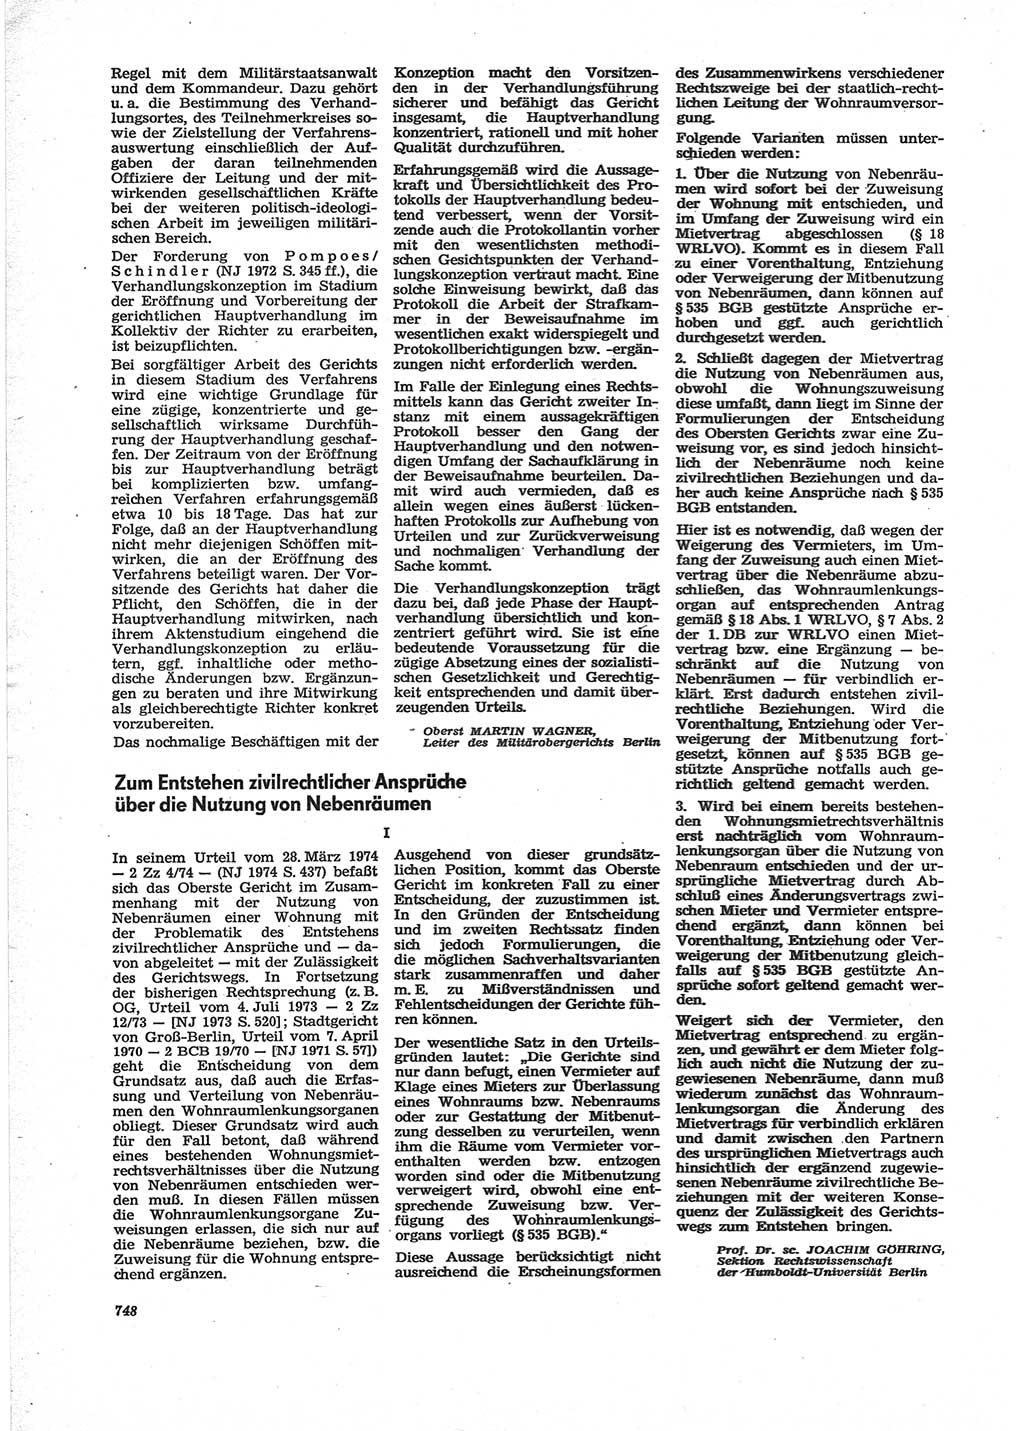 Neue Justiz (NJ), Zeitschrift für Recht und Rechtswissenschaft [Deutsche Demokratische Republik (DDR)], 28. Jahrgang 1974, Seite 748 (NJ DDR 1974, S. 748)